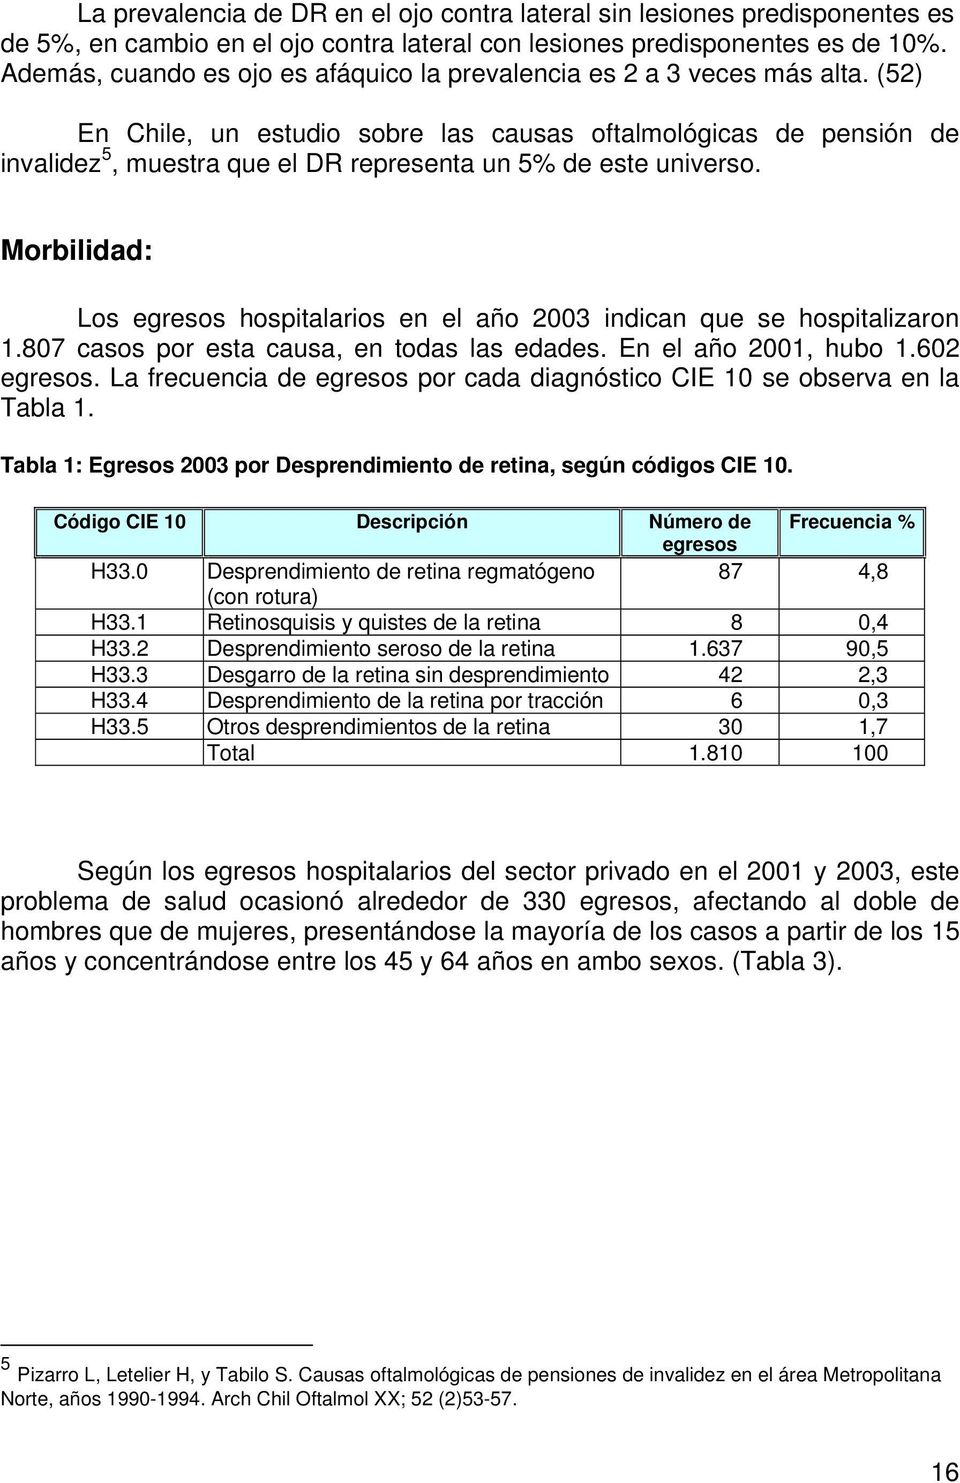 (52) En Chile, un estudio sobre las causas oftalmológicas de pensión de invalidez 5, muestra que el DR representa un 5% de este universo.